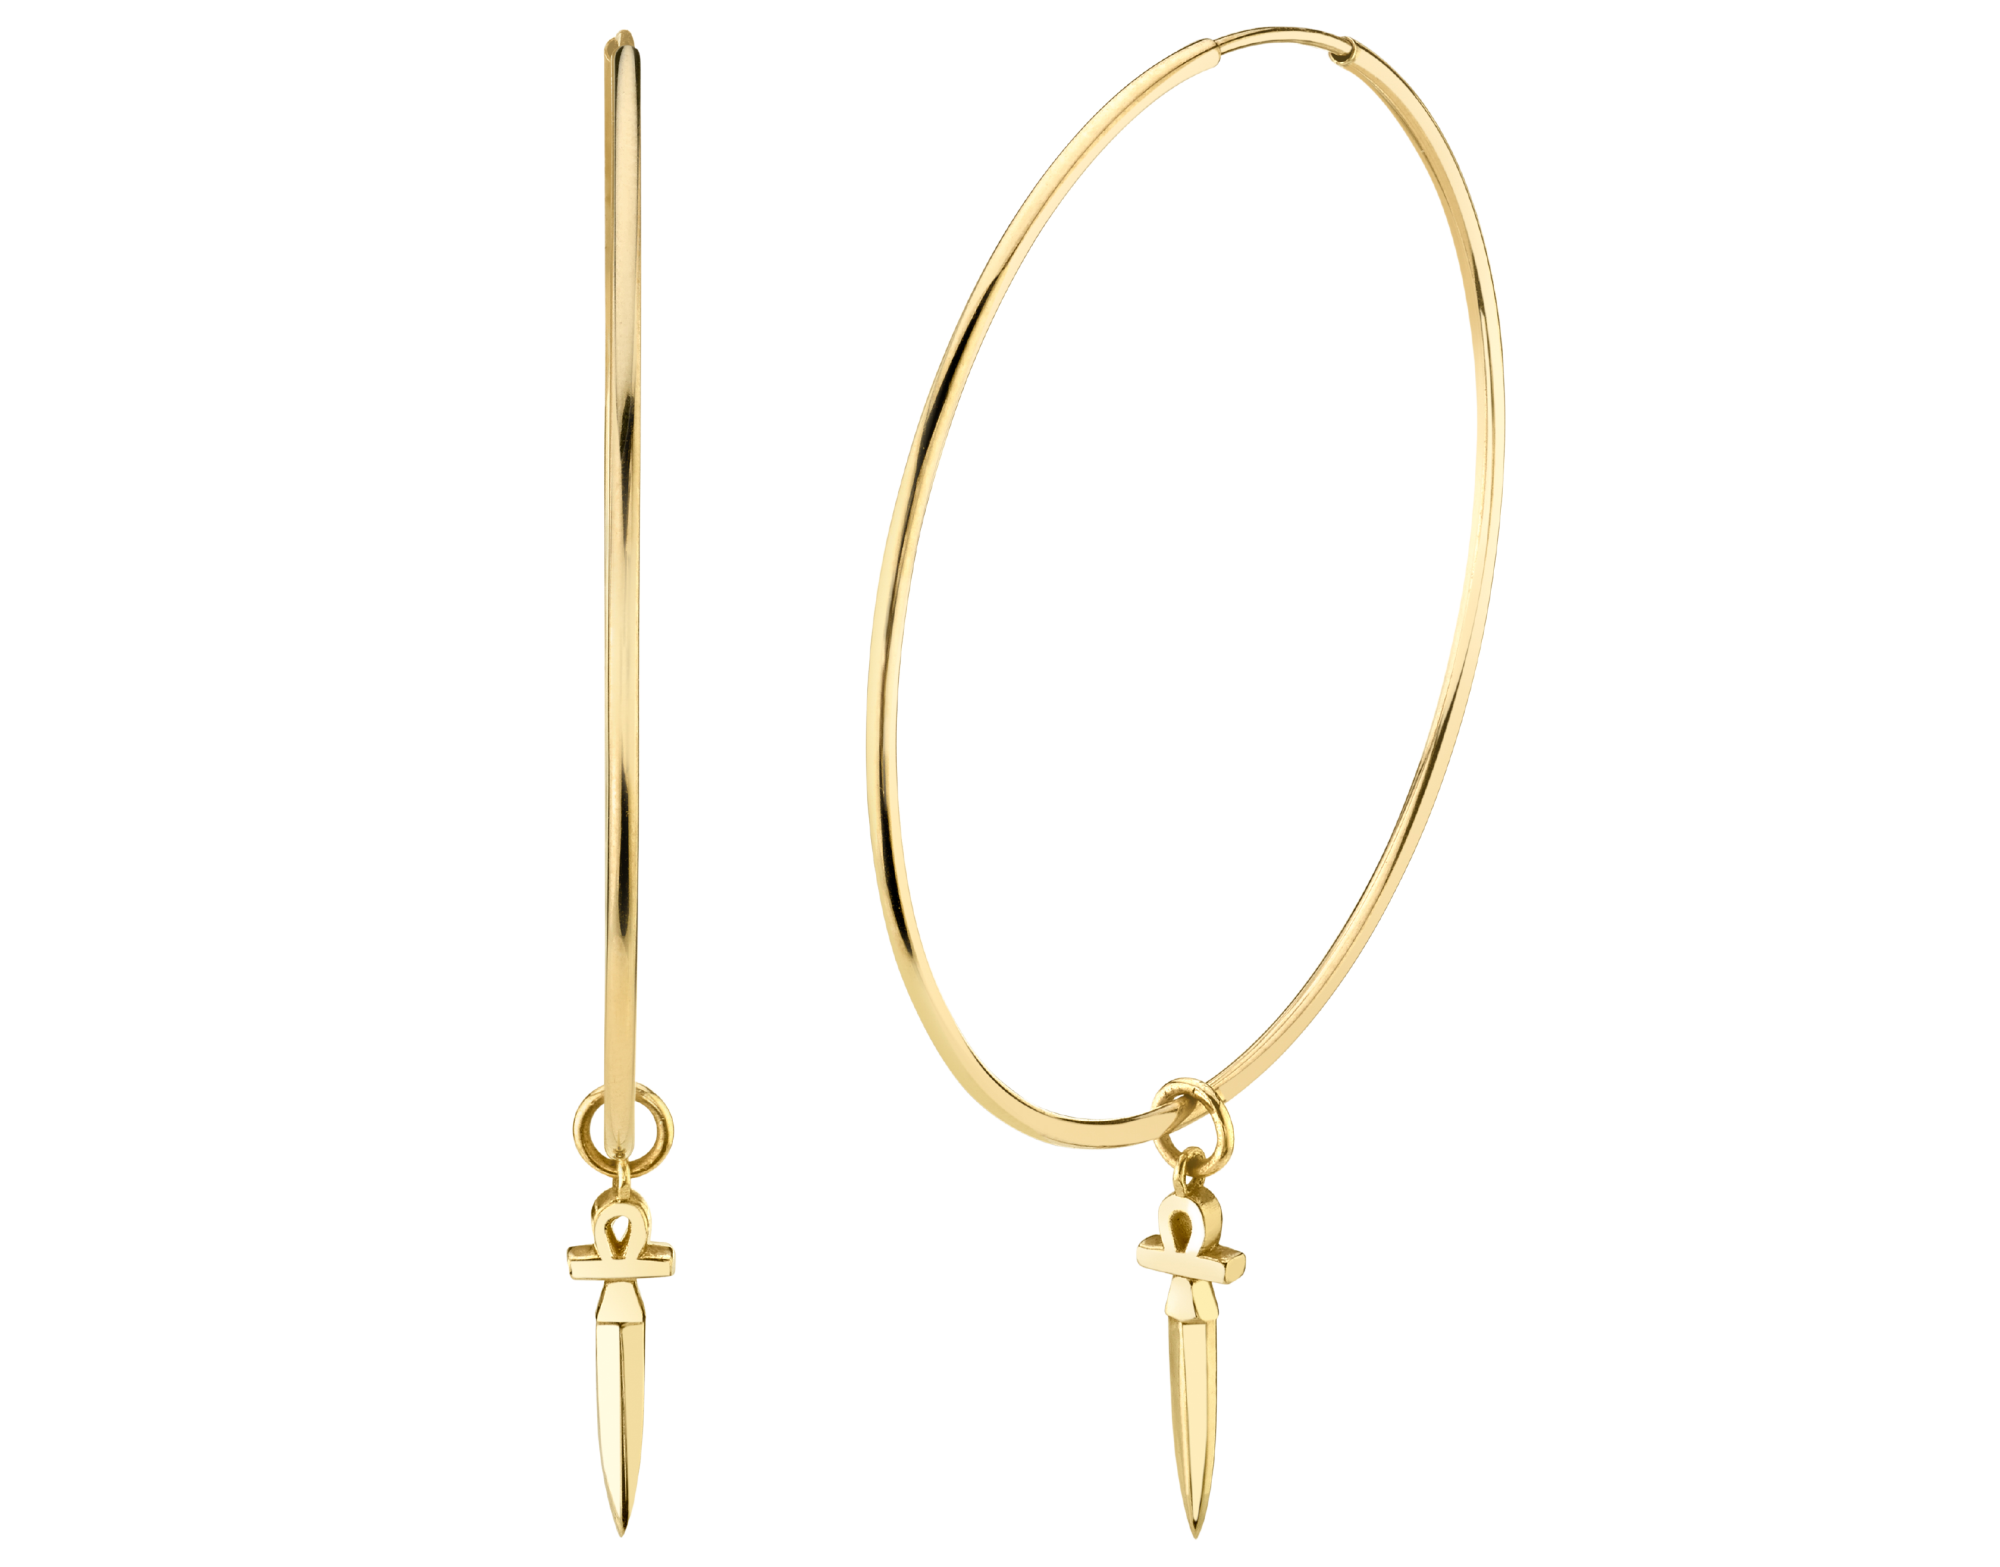 Carter Eve gold hoop earrings feature an ankh dagger charm